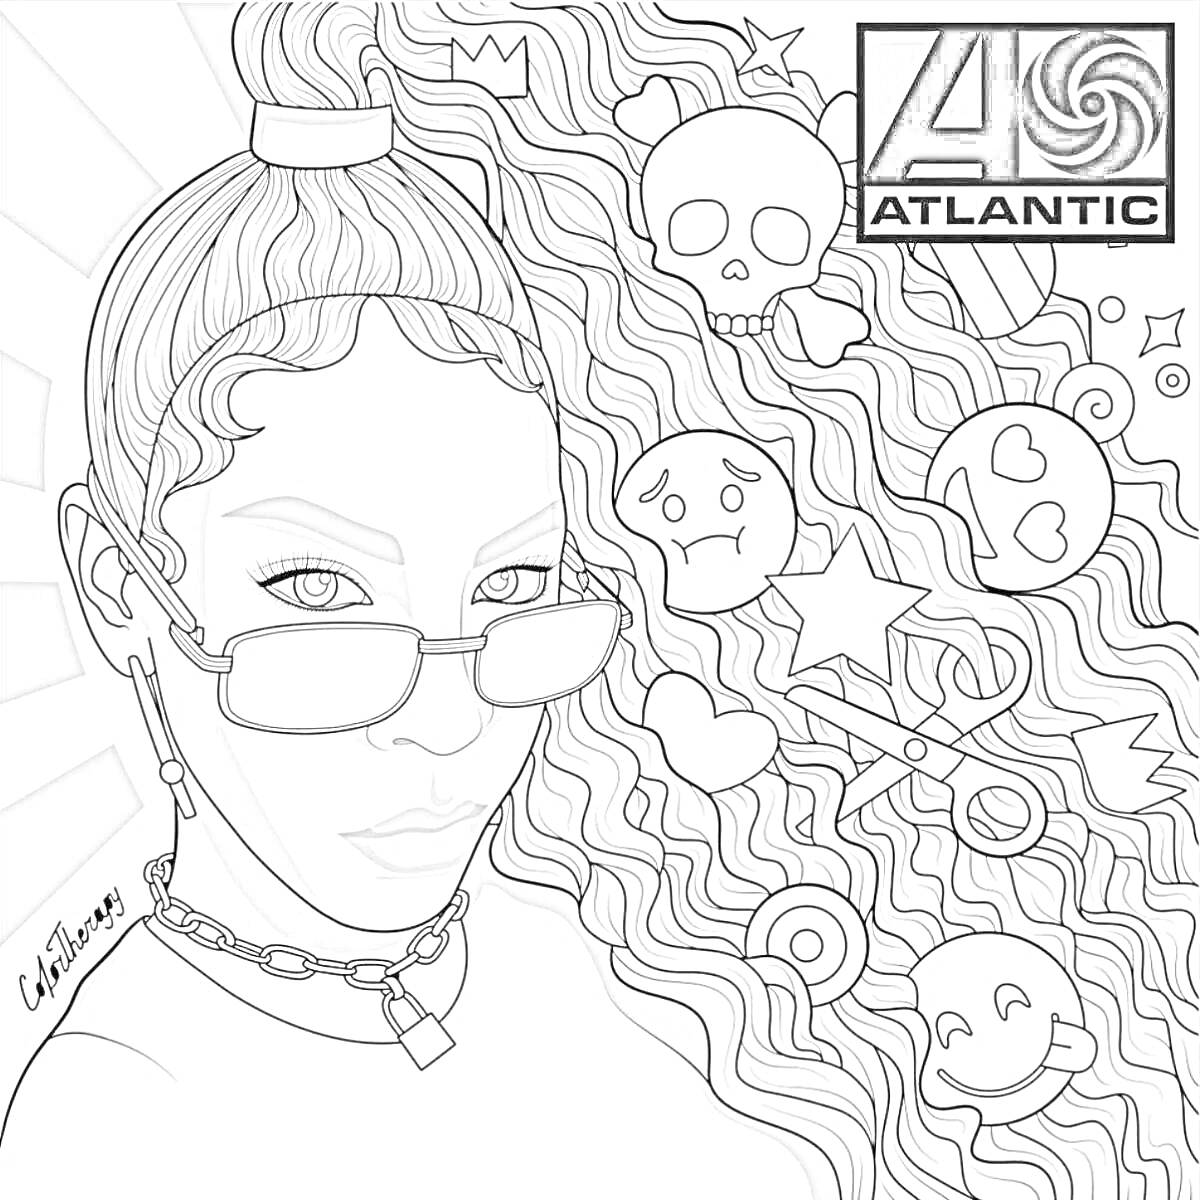 Раскраска Девушка с очками на фоне с волнистыми волосами и элементами классического пикс-арта (череп, смайлики, звезды)